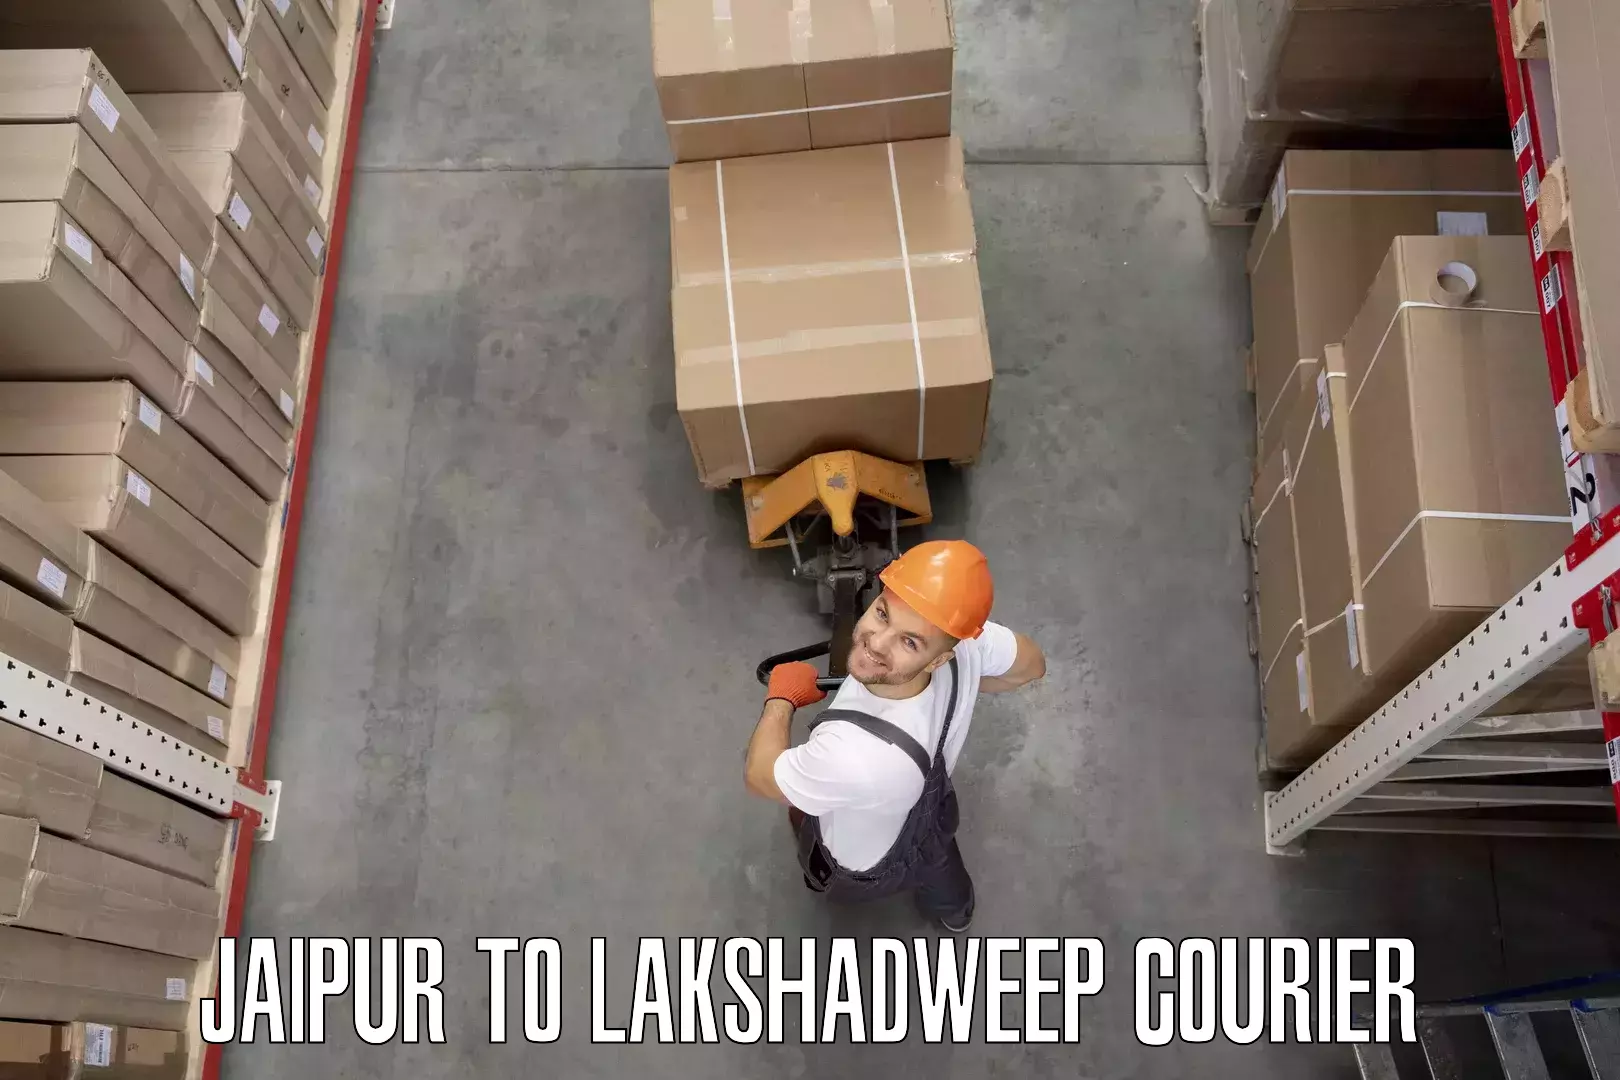 Furniture moving experts Jaipur to Lakshadweep